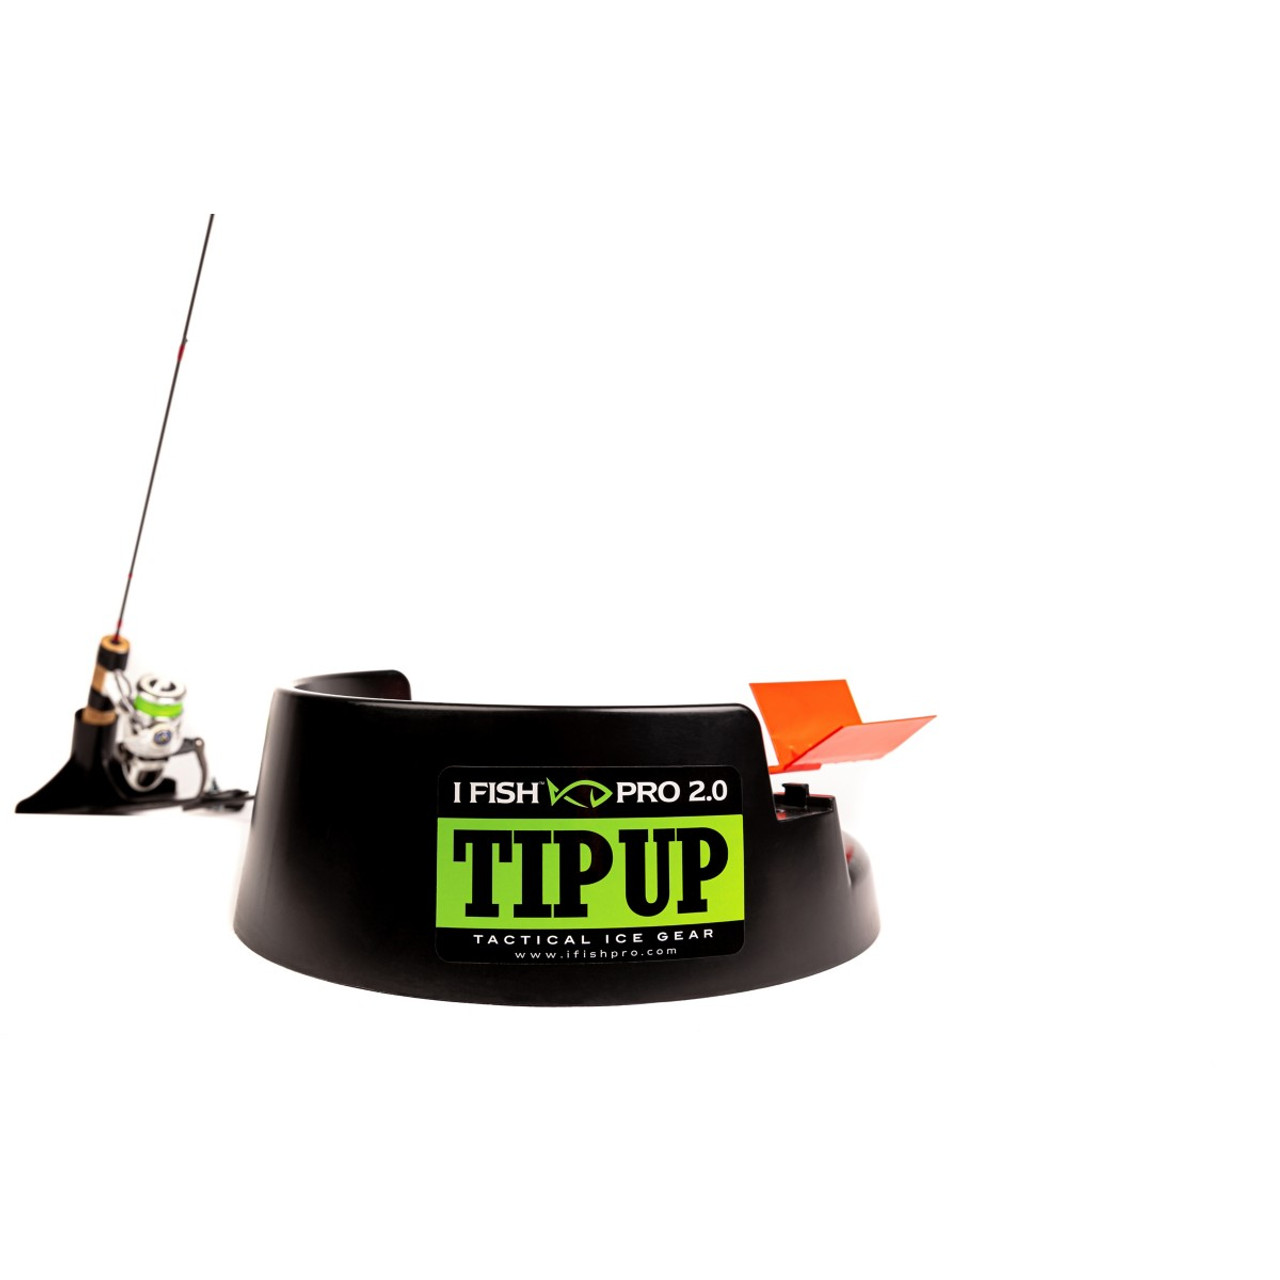 IFISH IFPTU1 Pro 2.0 Ice Fishing Tip Up - GoIceFish